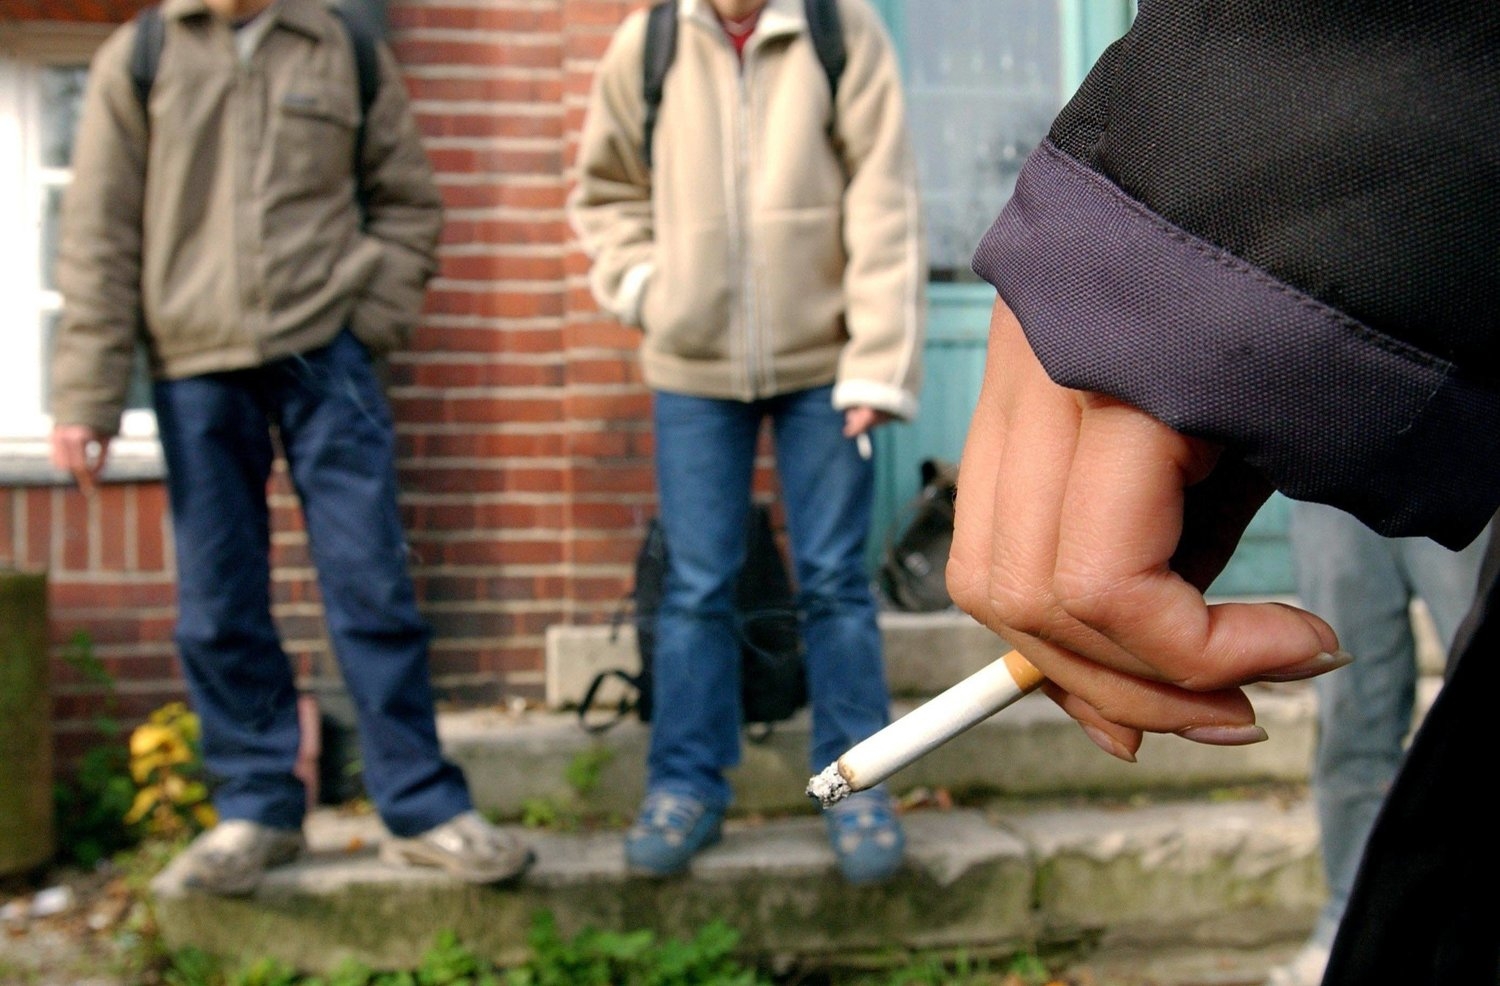 5 حقائق عن السجائر في اليوم العالمي للامتناع عن التدخين